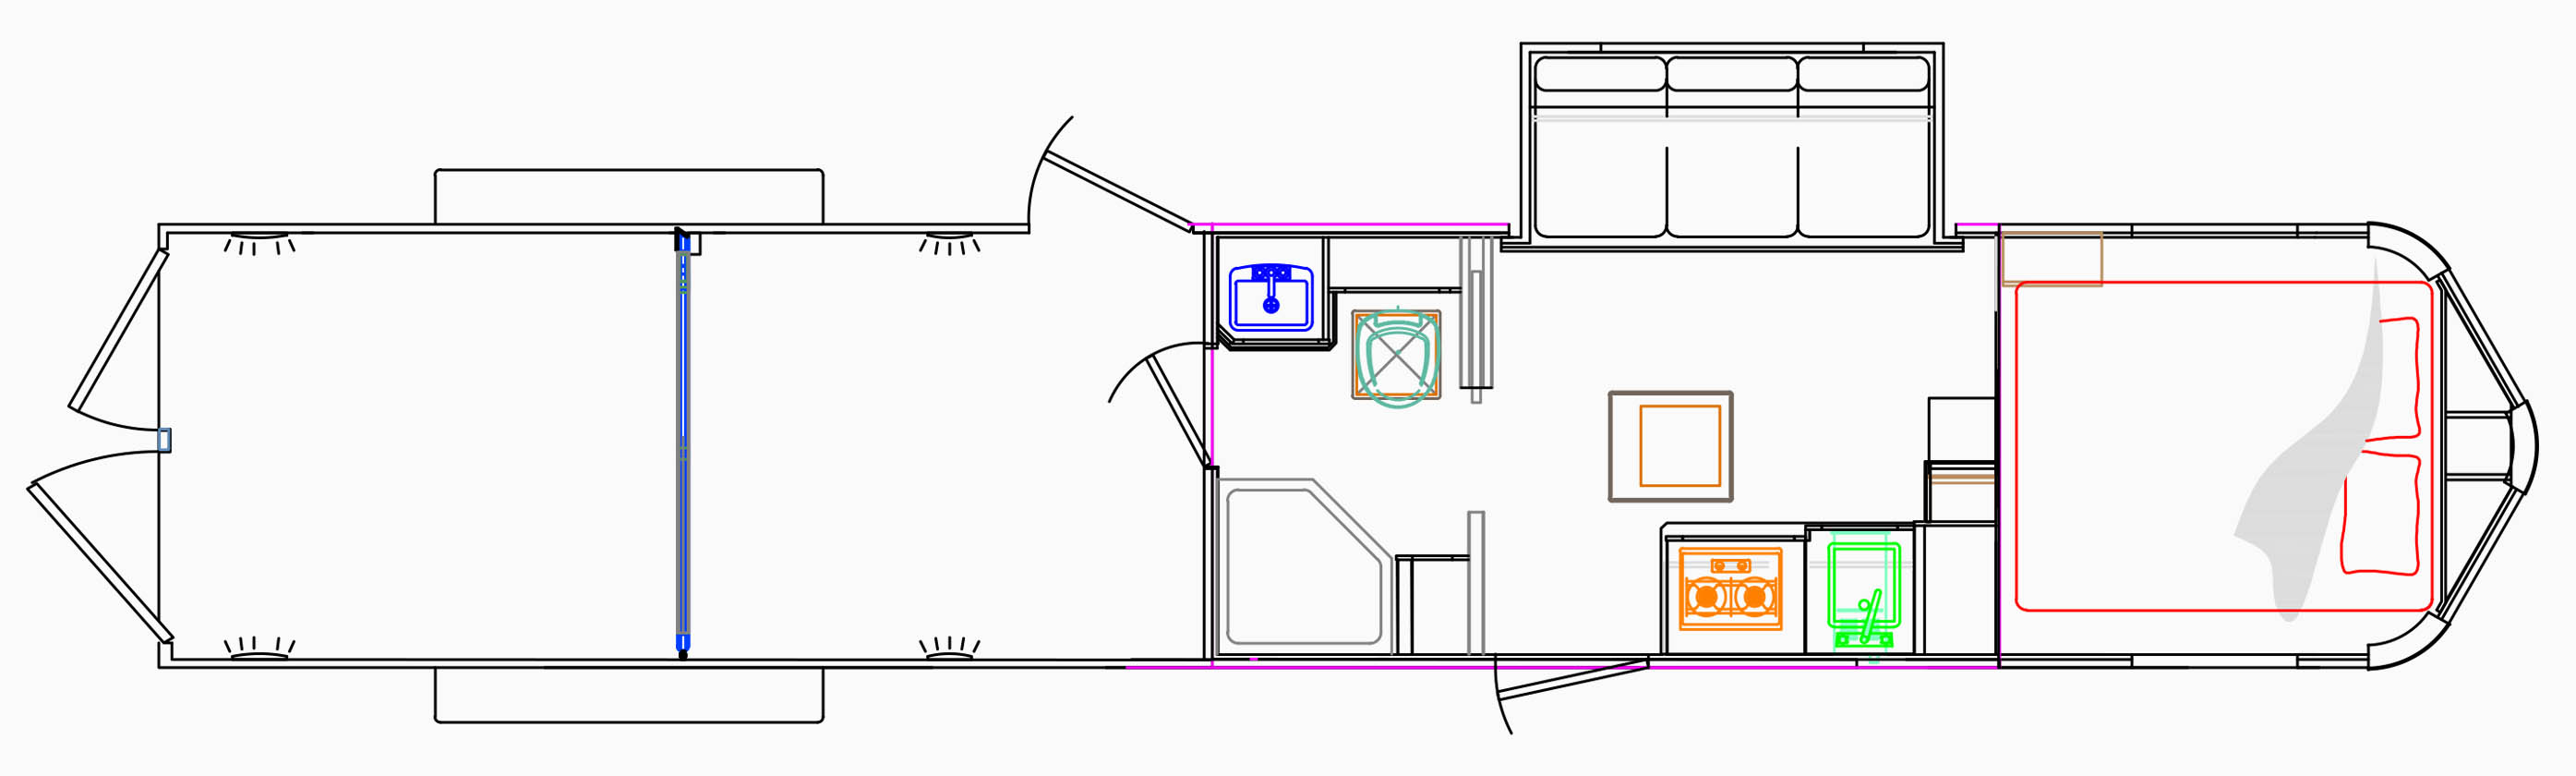 LE1612 Floor Plan